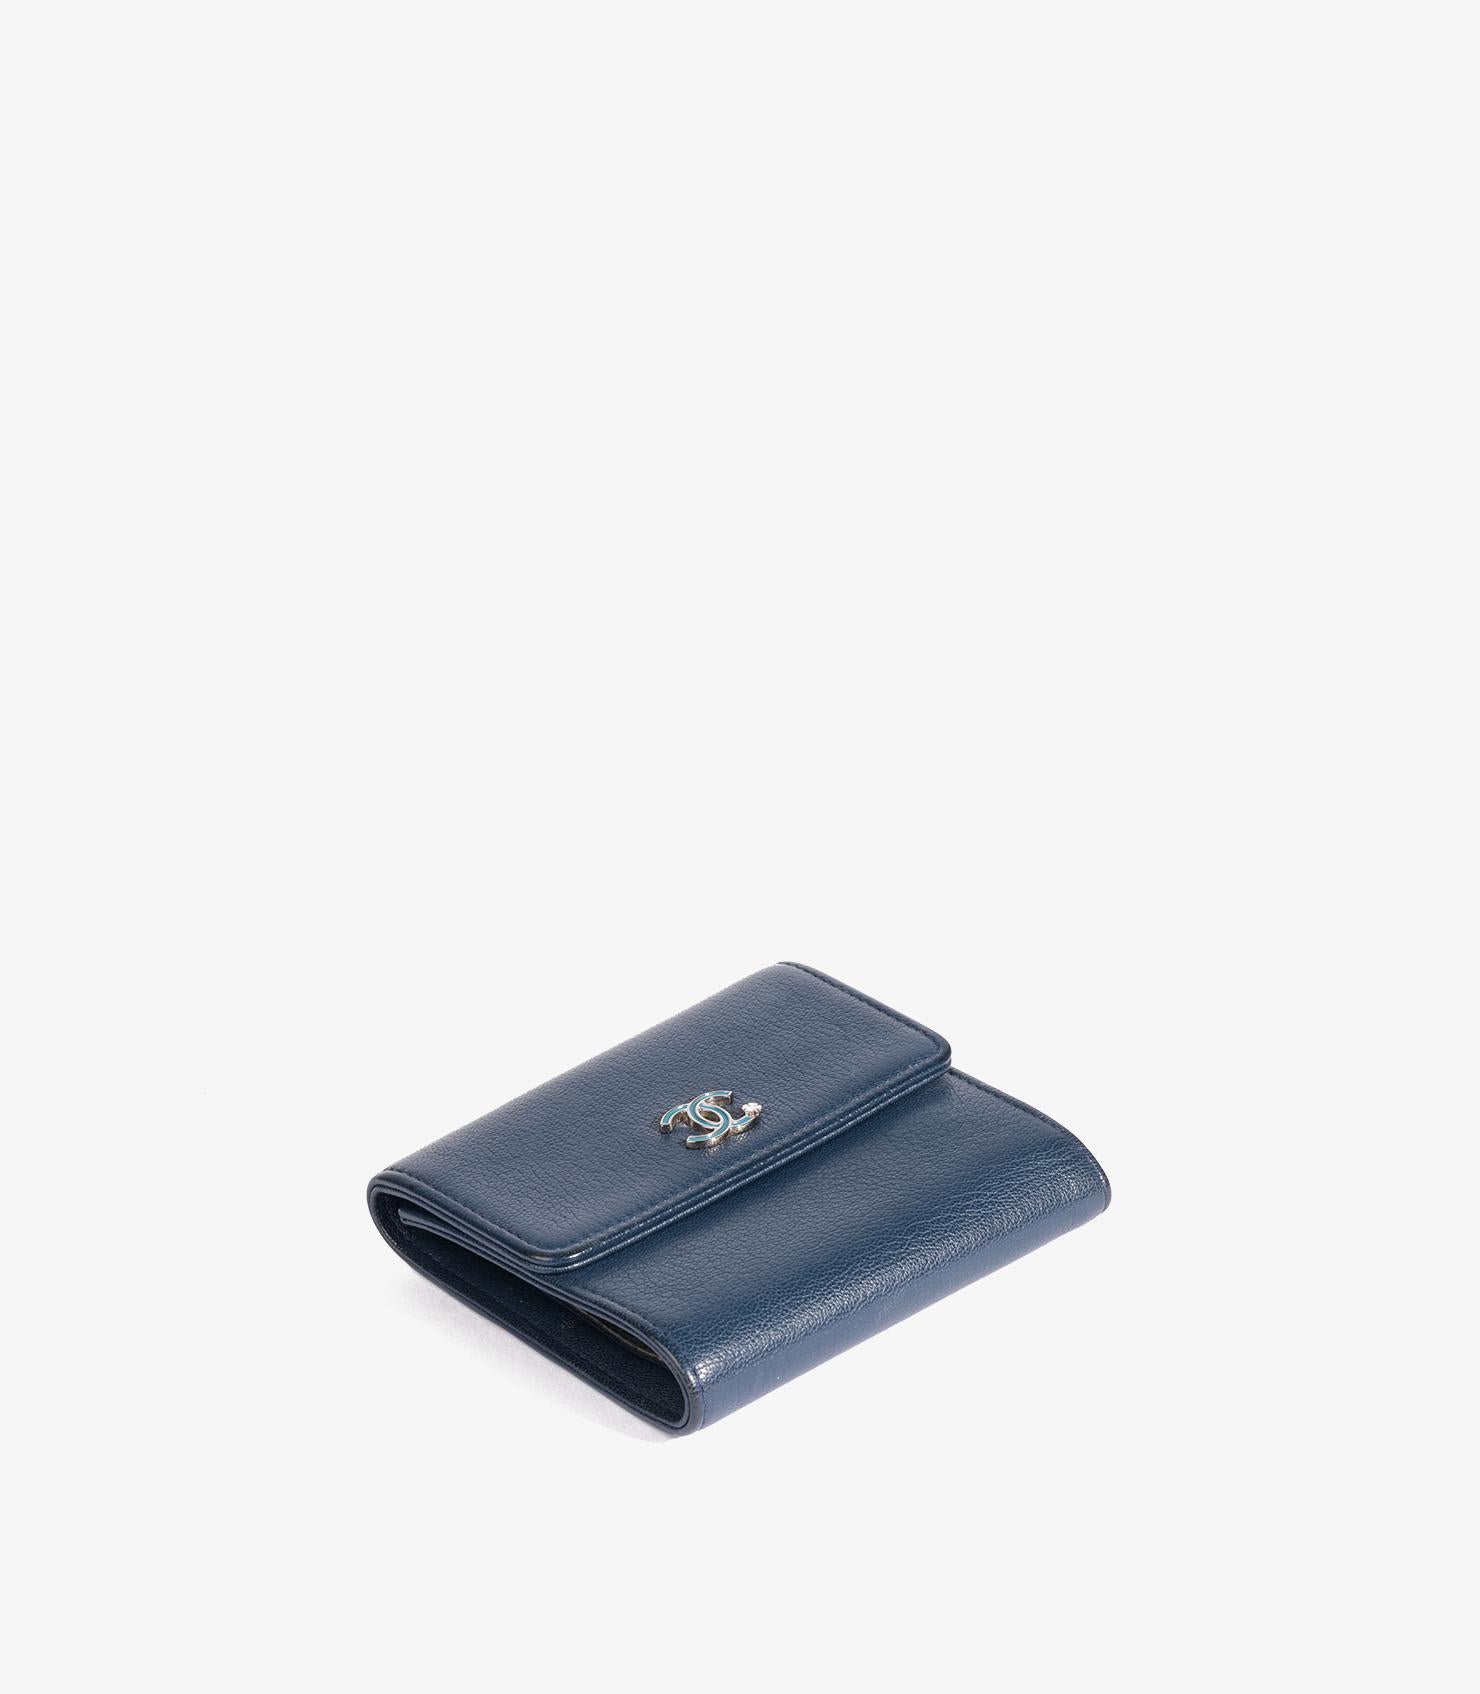 Chanel Marineblaues Ziegenleder Kleeblatt kompakte Brieftasche

Marke- Chanel
Modell- Clover Compact Brieftasche
Produkttyp- Brieftasche
Seriennummer - 24******
Alter- Circa 2017
Begleitet von - Chanel Echtheitskarte
Farbe - Marine
Hardware-